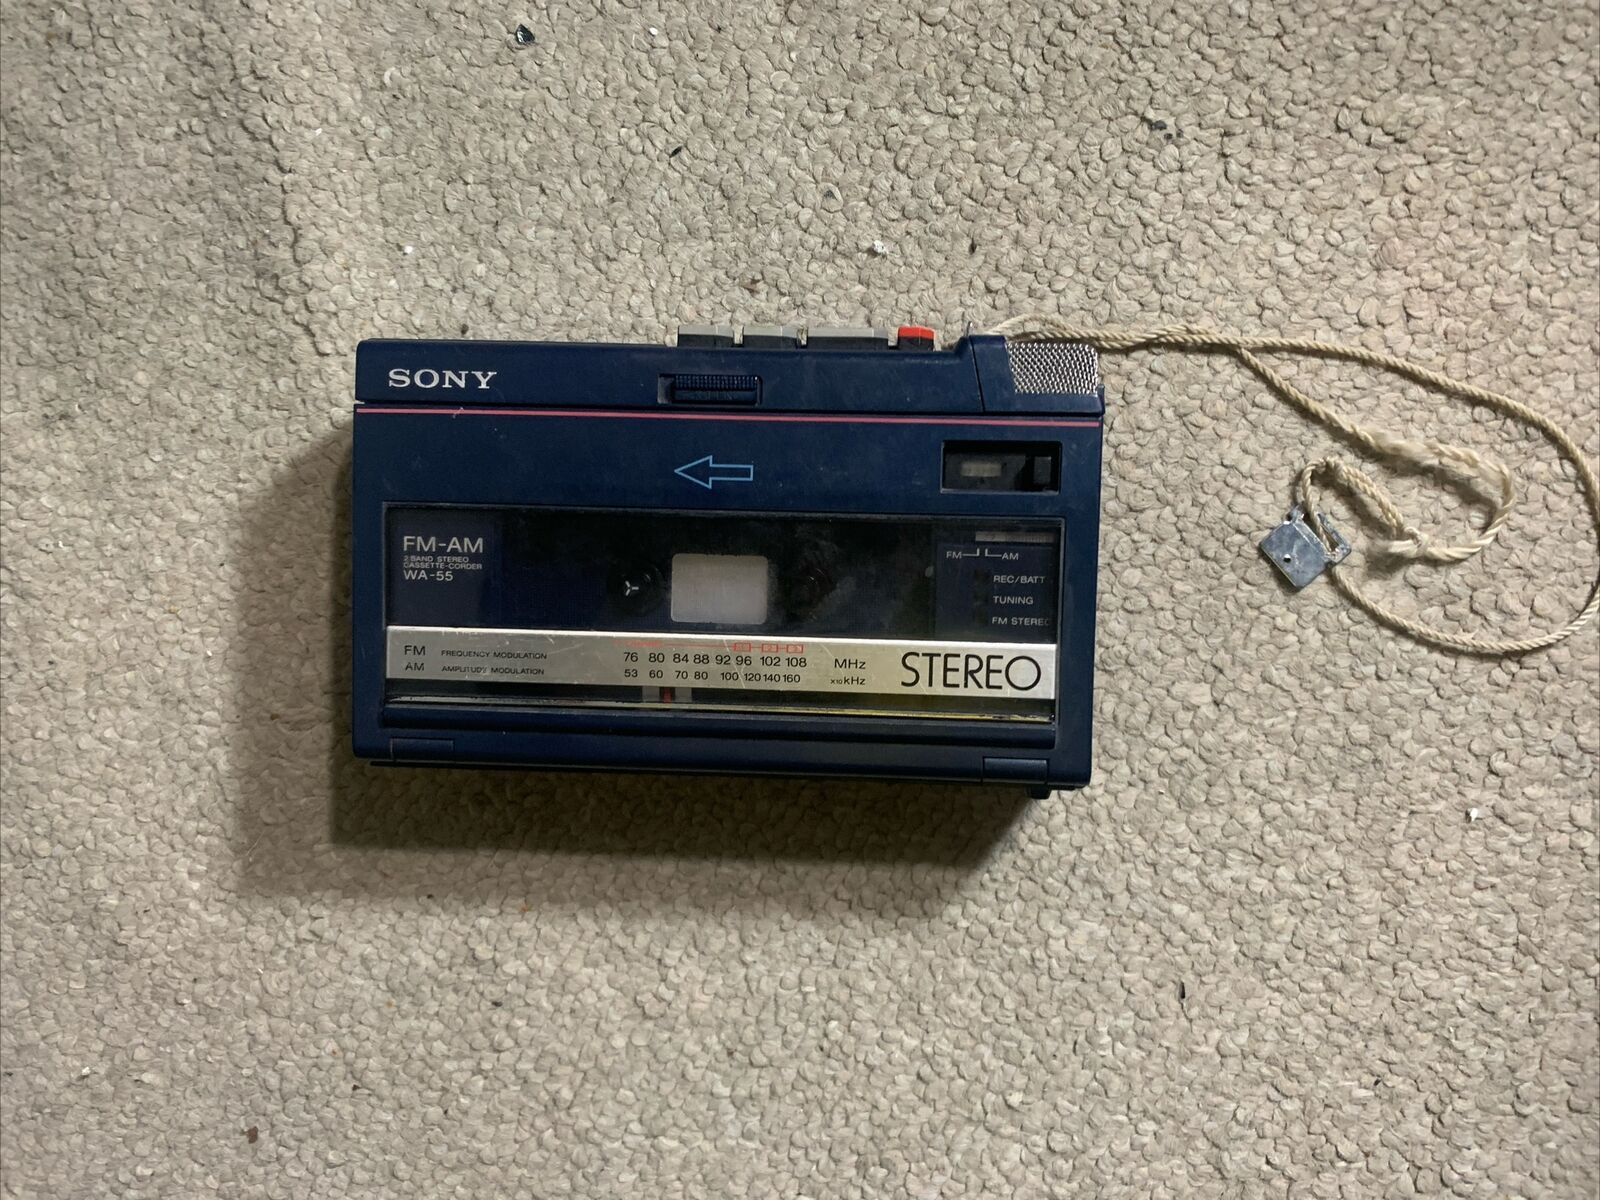 Sony Soundabout WA-55 2 Band Stereo Cassette Recorder Walkman